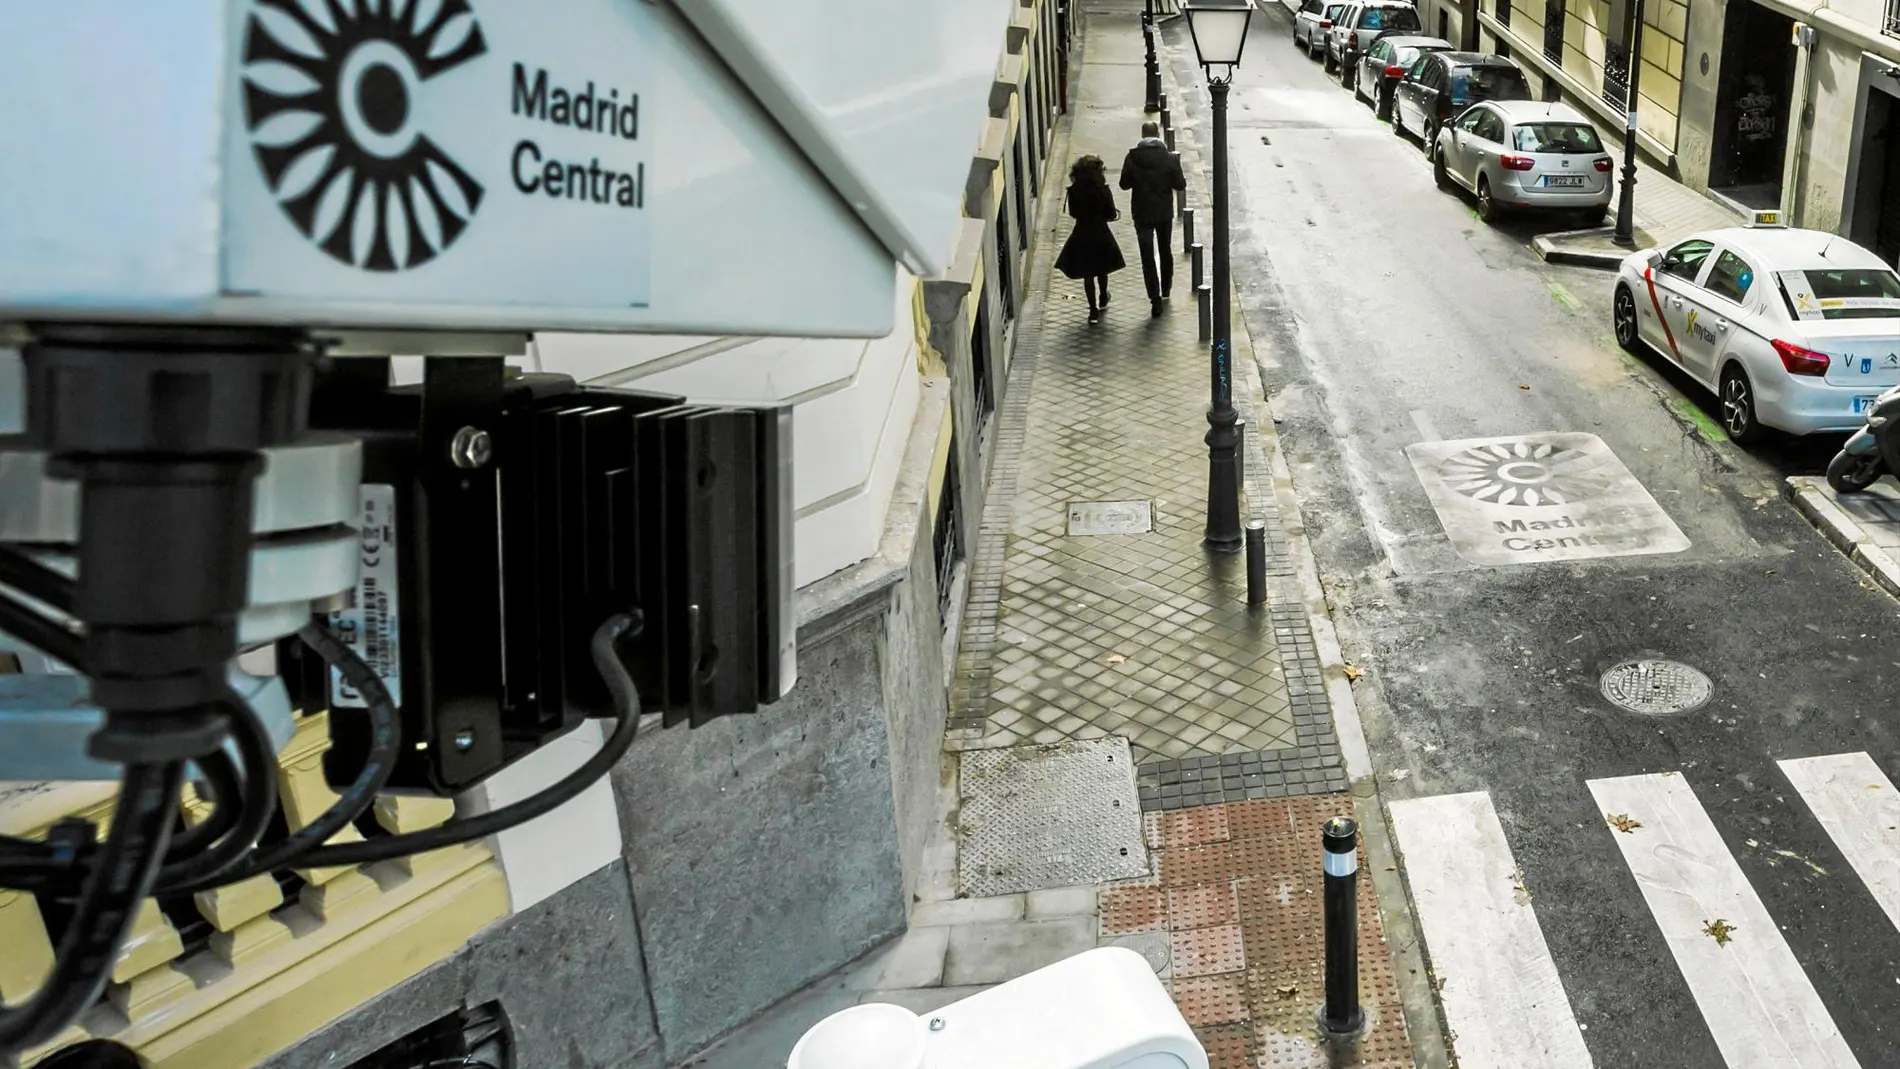 El cierre de varias zonas de la capital ha culminado con el polémico proyecto de Madrid Central / Foto: Alberto R. Roldán